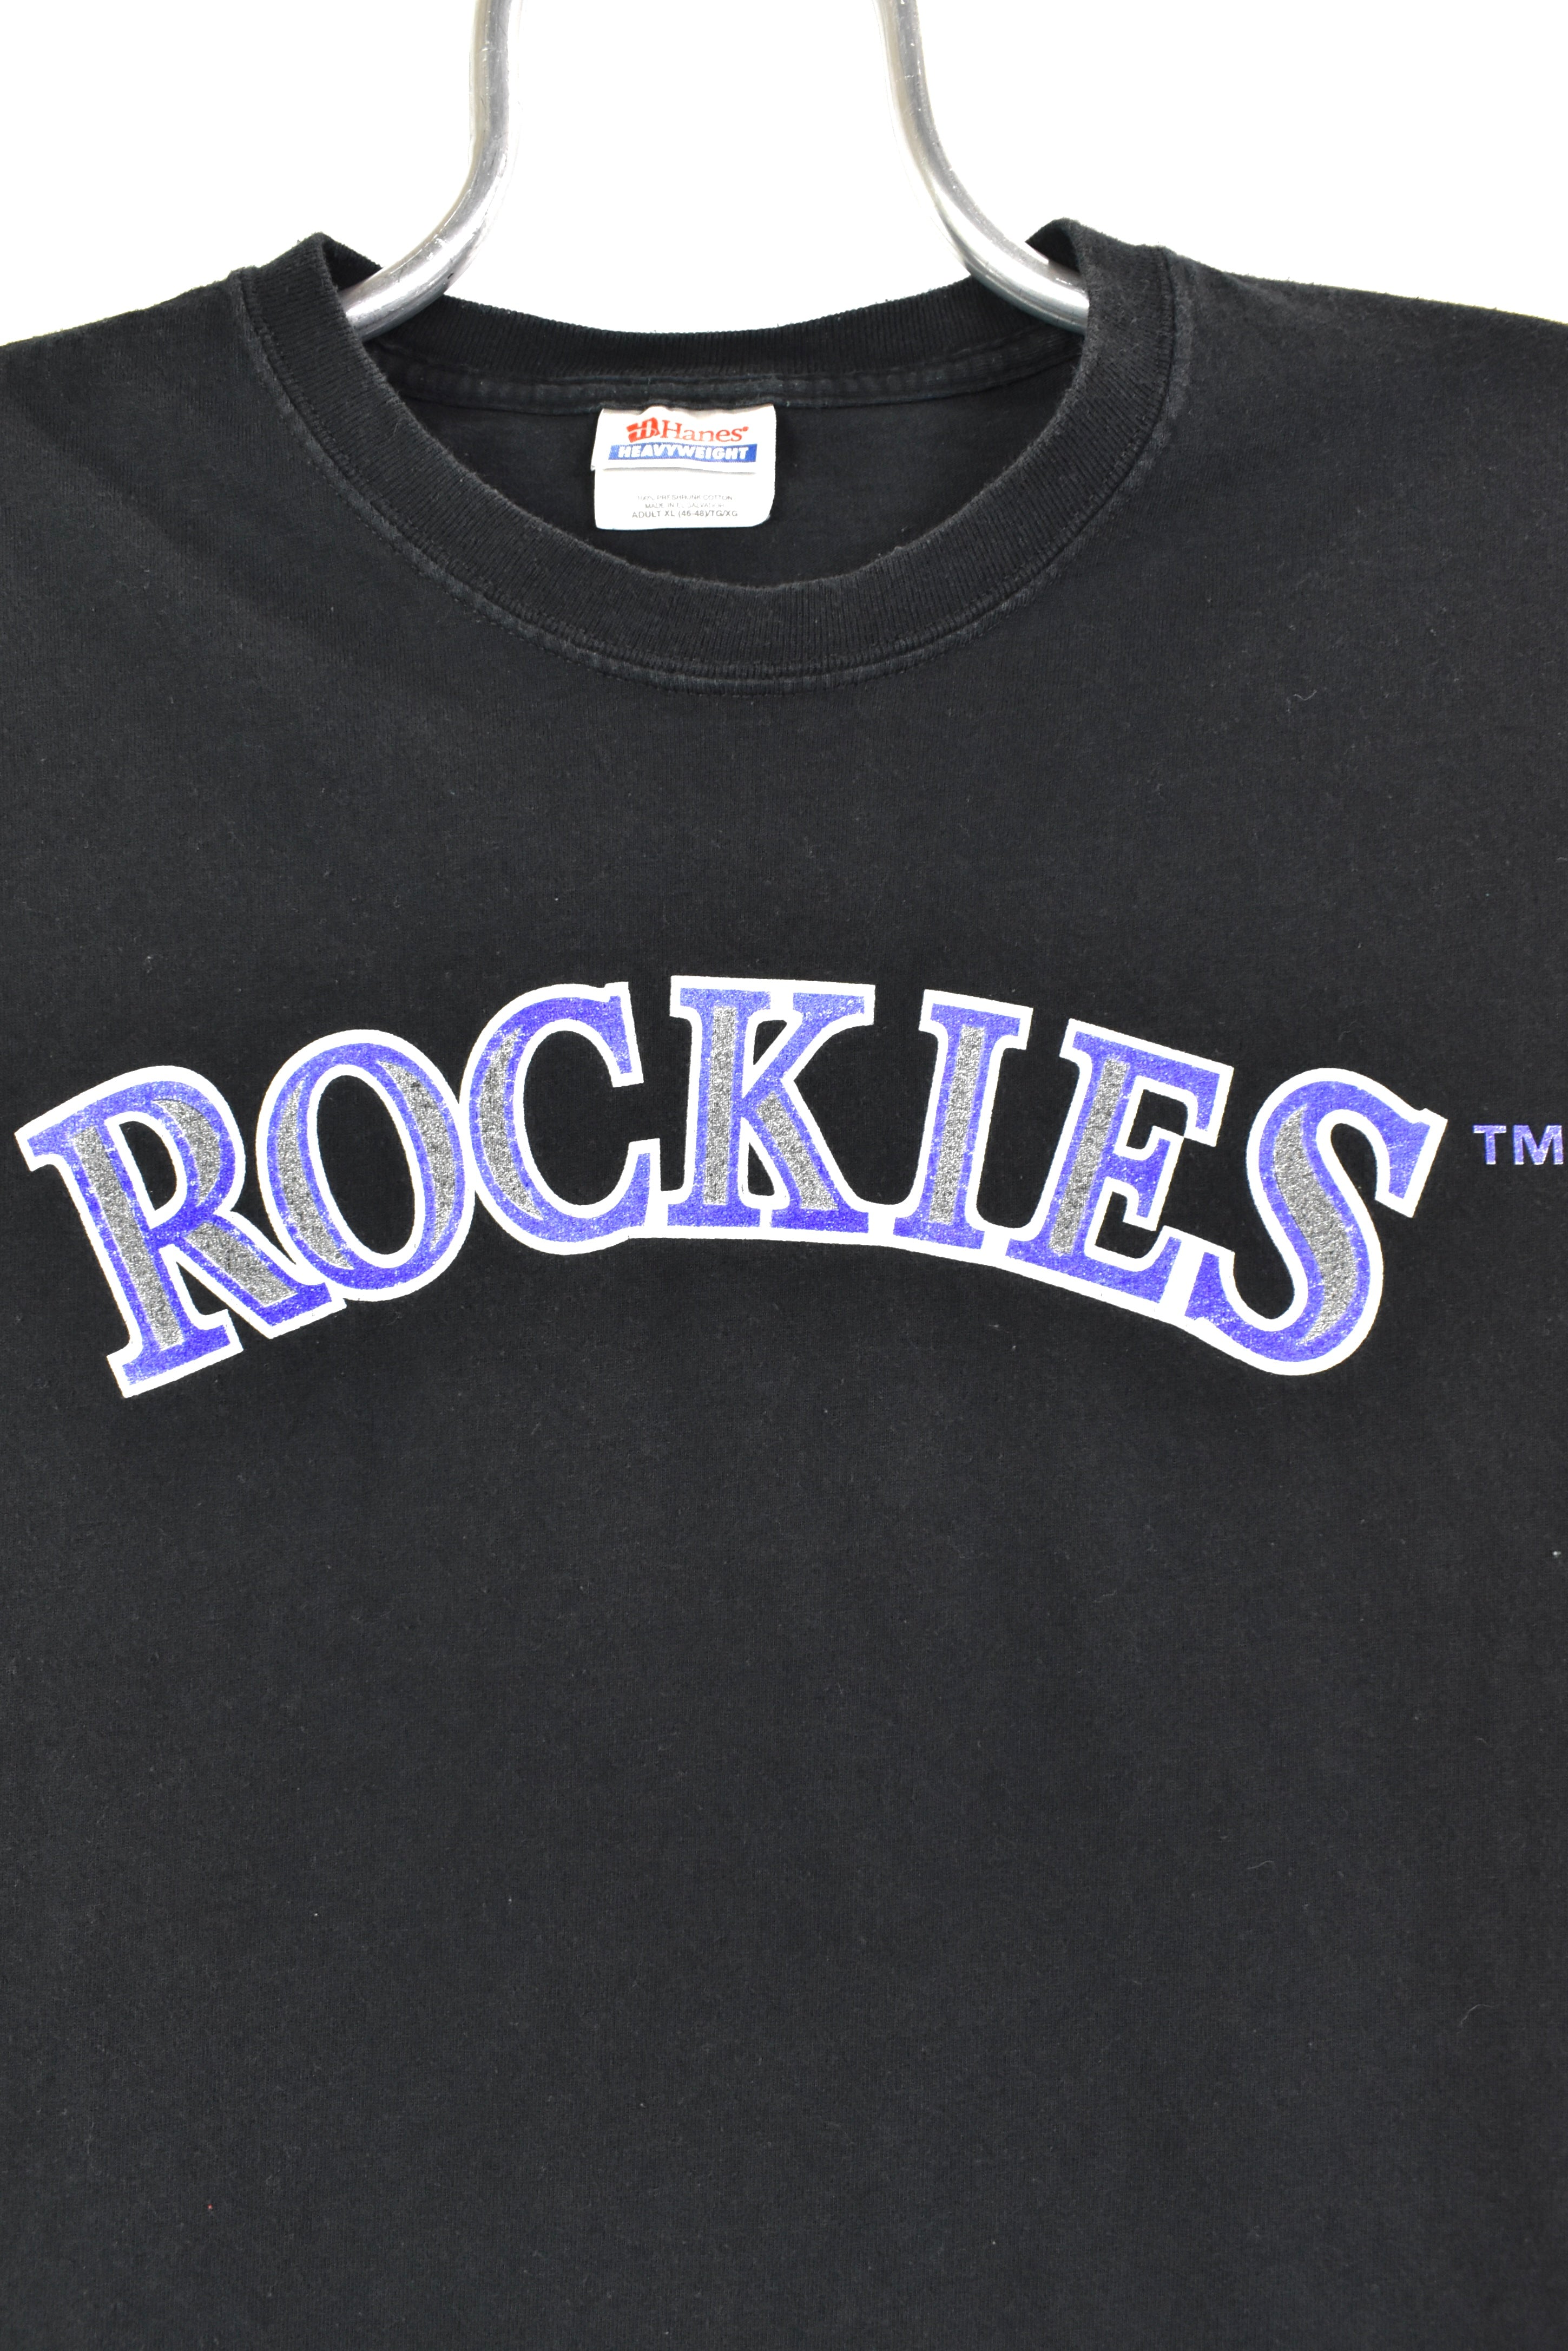 Vintage Baseball Jersey Colorado Rockies -   Vintage baseball,  Colorado rockies, Baseball jerseys